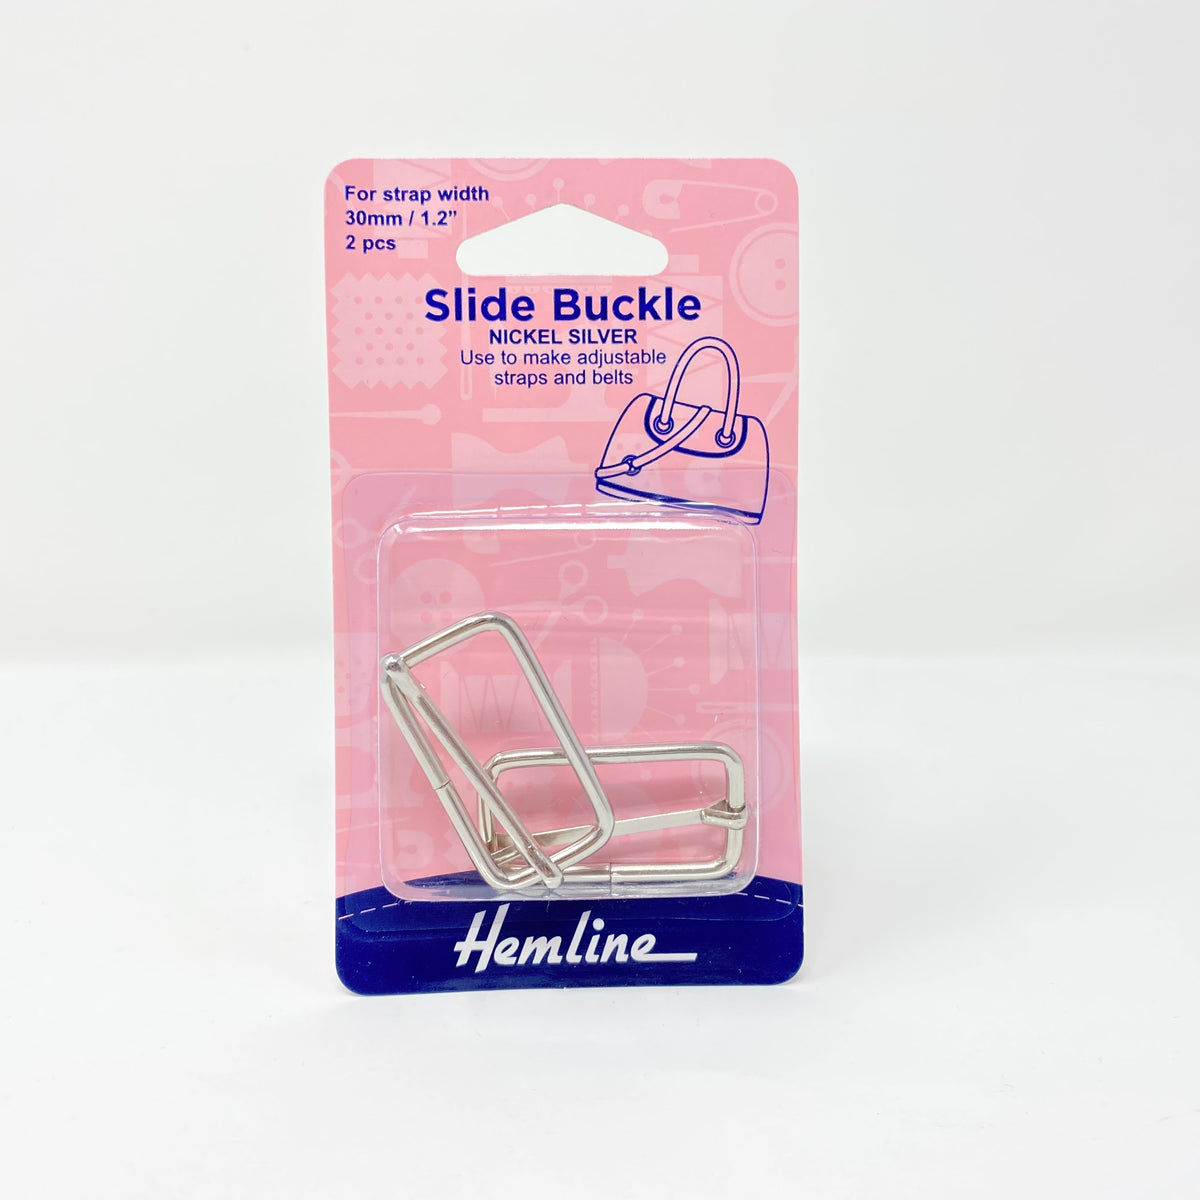 Hemline - Slide Buckle Nickel Silver 2 set – Jolly Stitcher